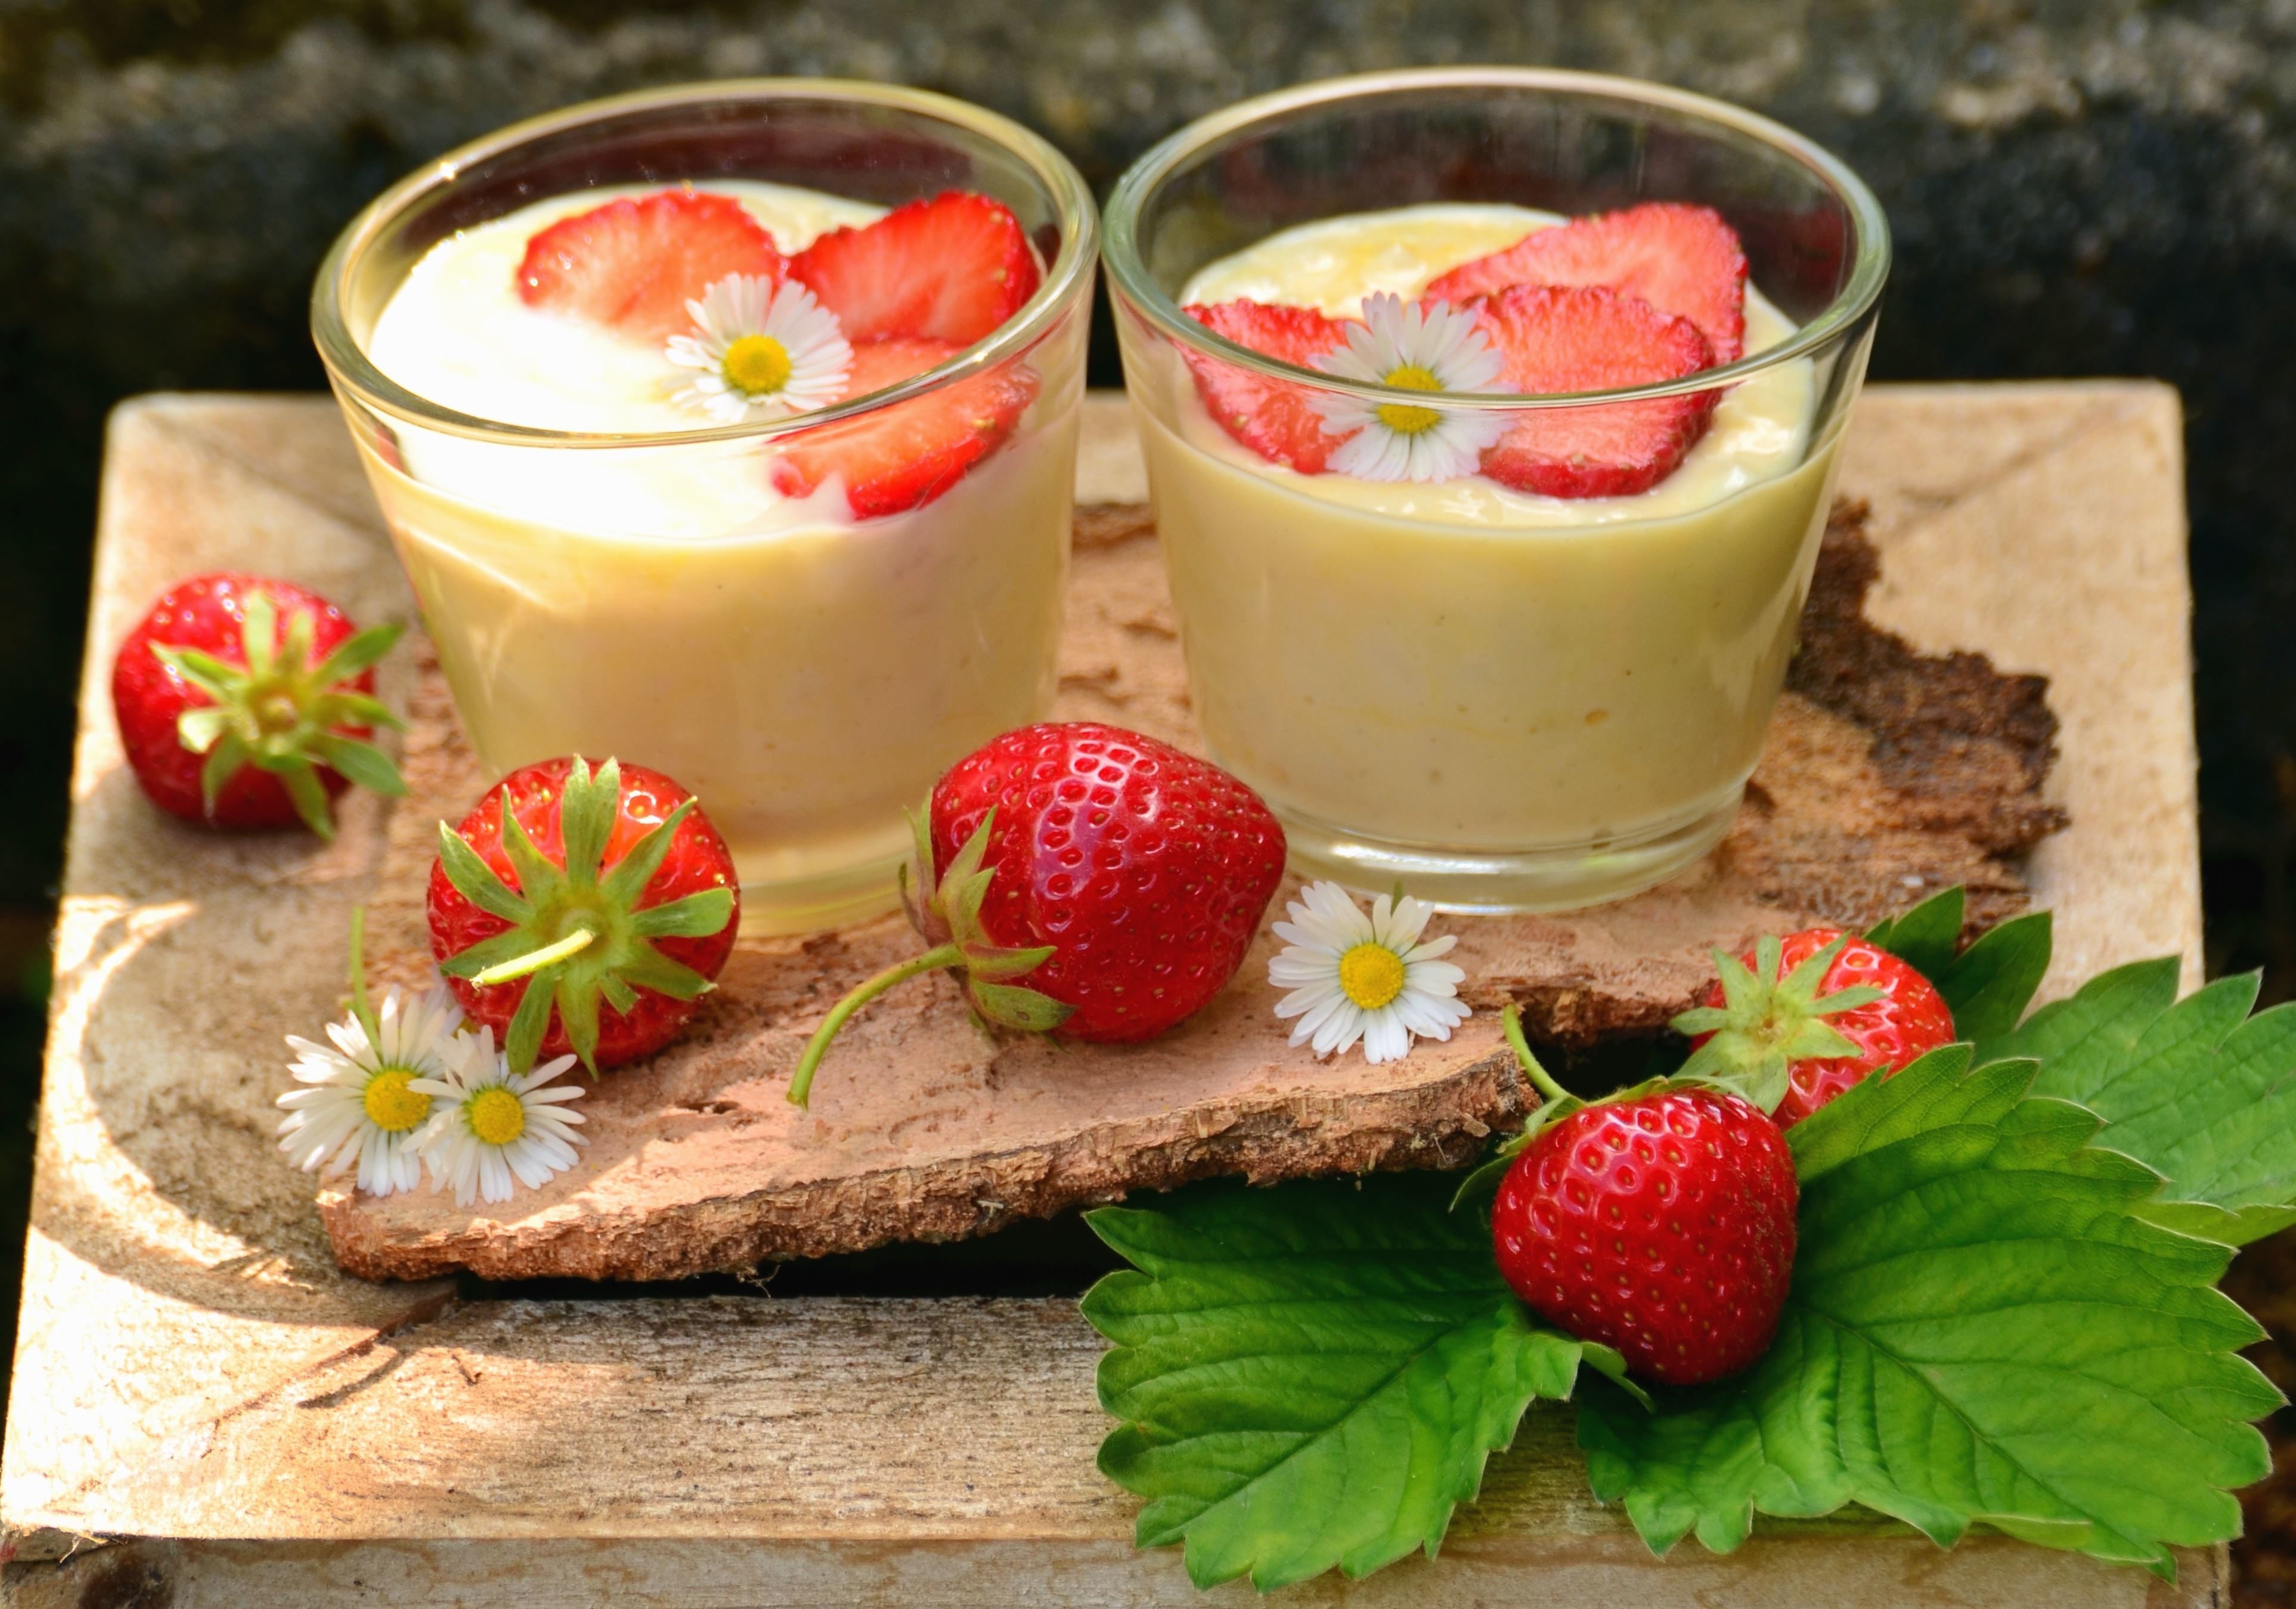 Kostenlose Bild: Erdbeere, Pudding, Obst, süß, Blatt, Glas